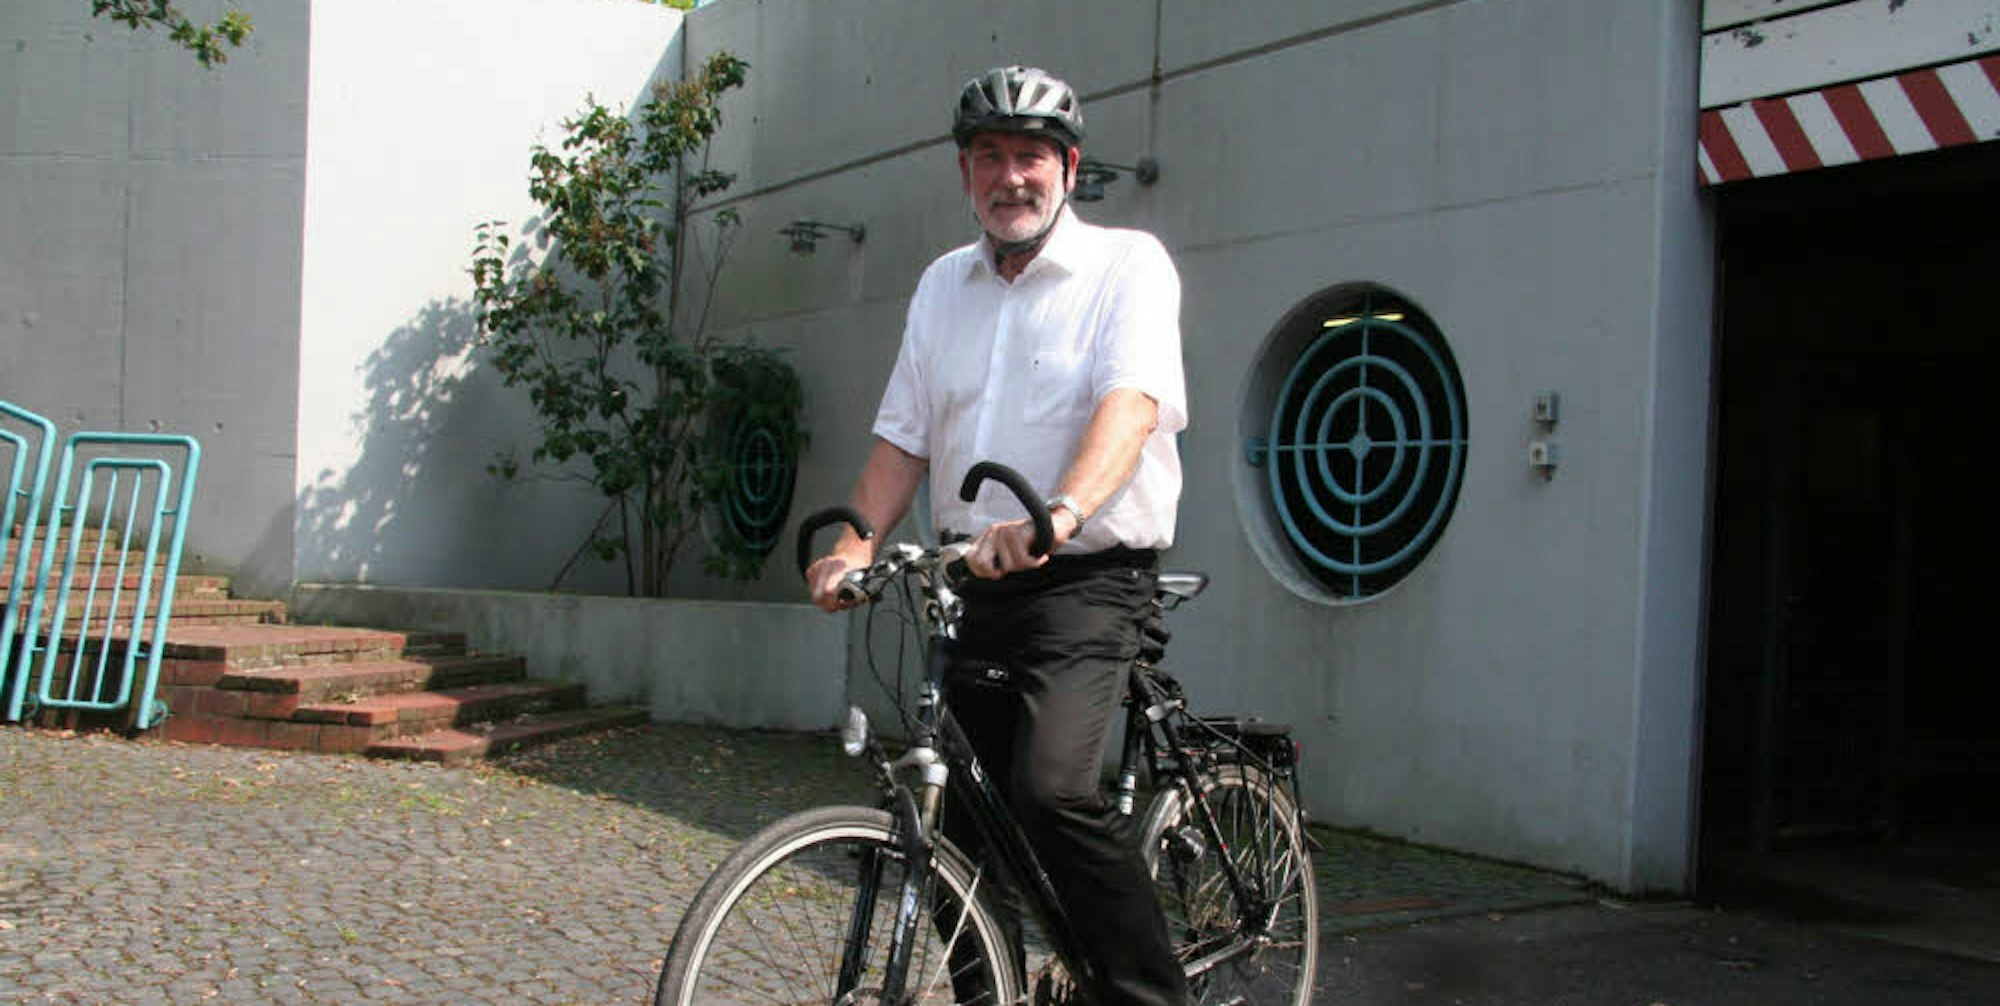 Walther Boecker führte in Hürth Dienstfahrten mit dem Fahrrad ein. (Archivfoto)